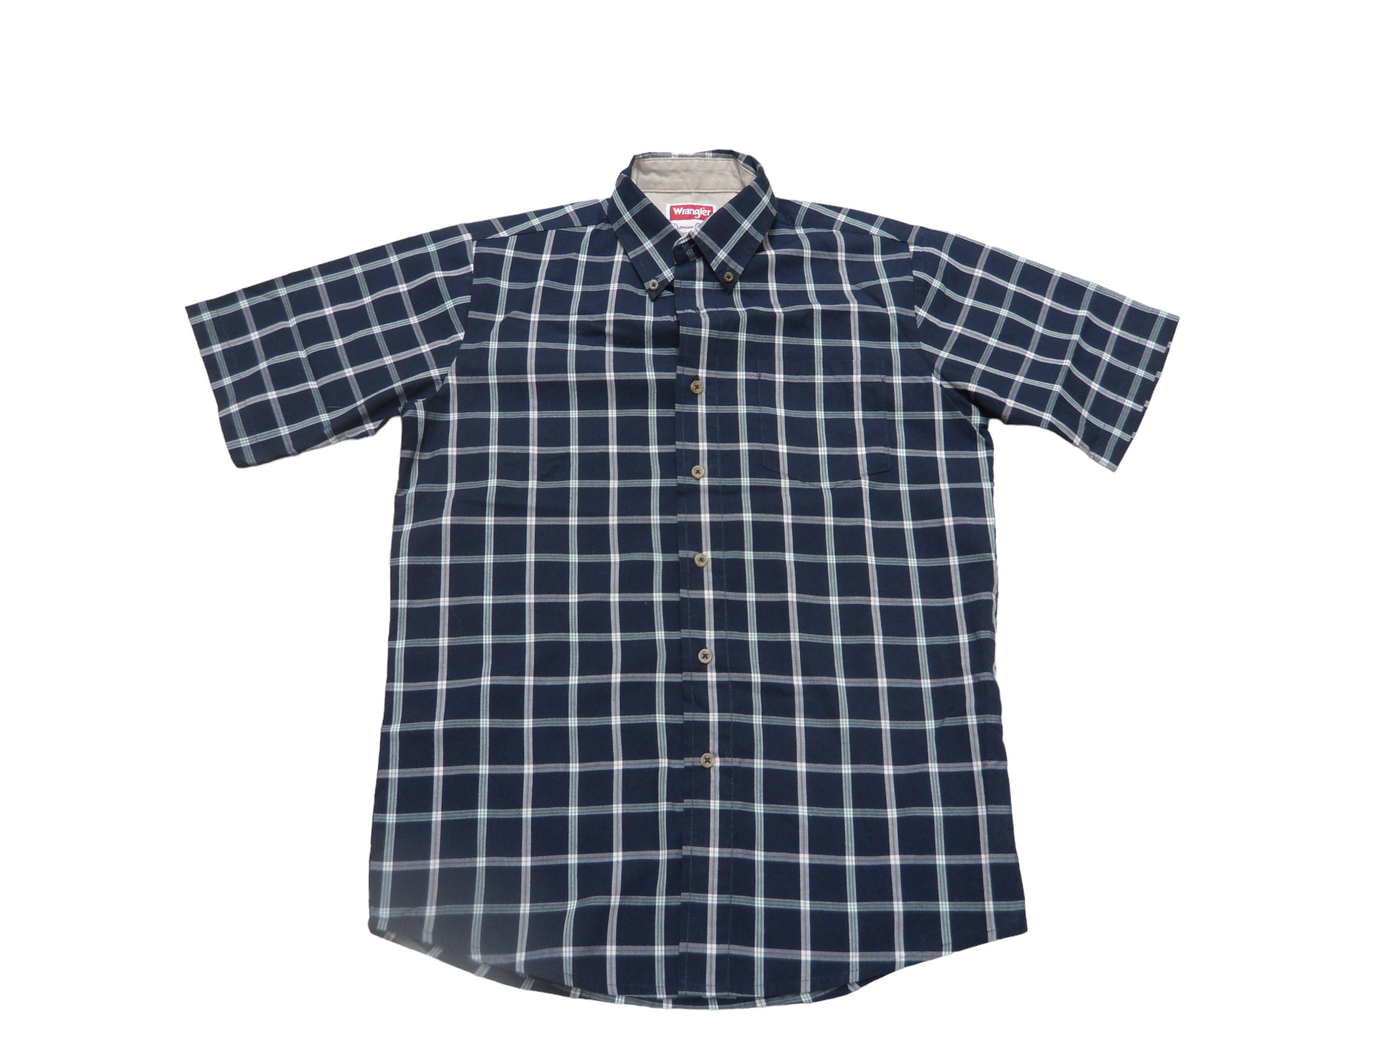 Vintage Wrangler, Wrinkle Resistant Dark Blue With White Checks, Short Sleeve Shirt-Small